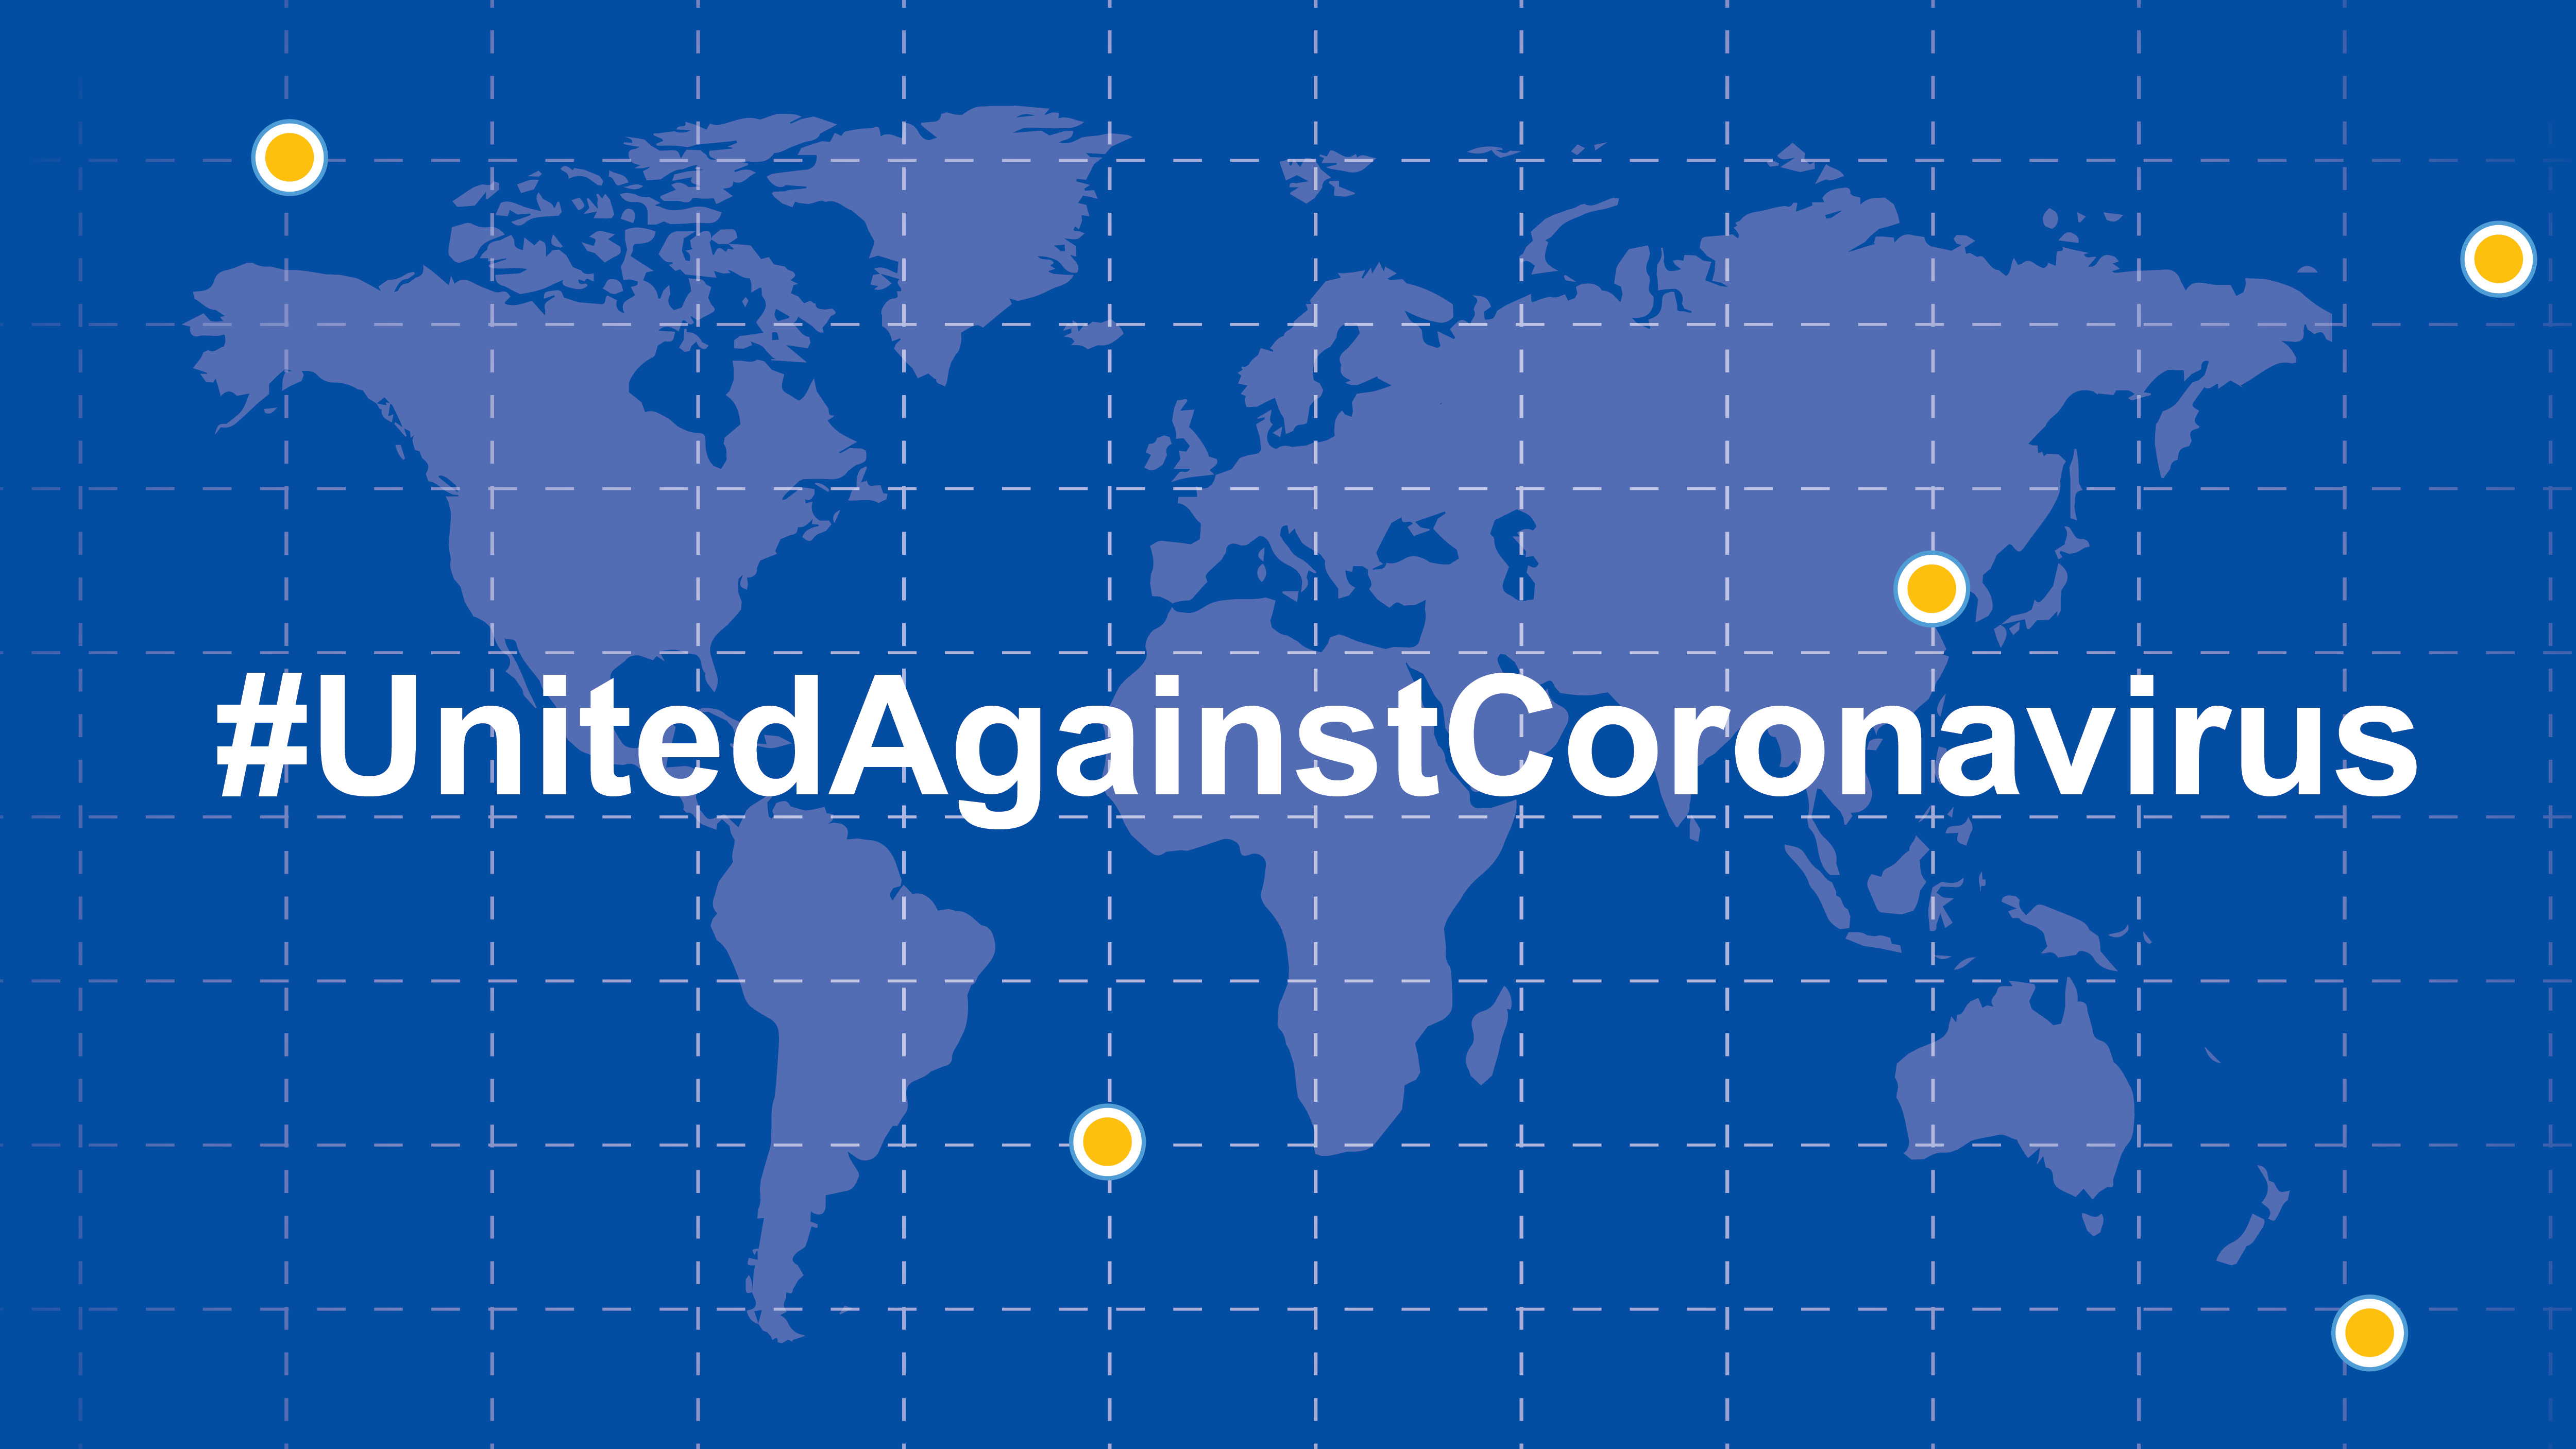 We stay united against coronavirus